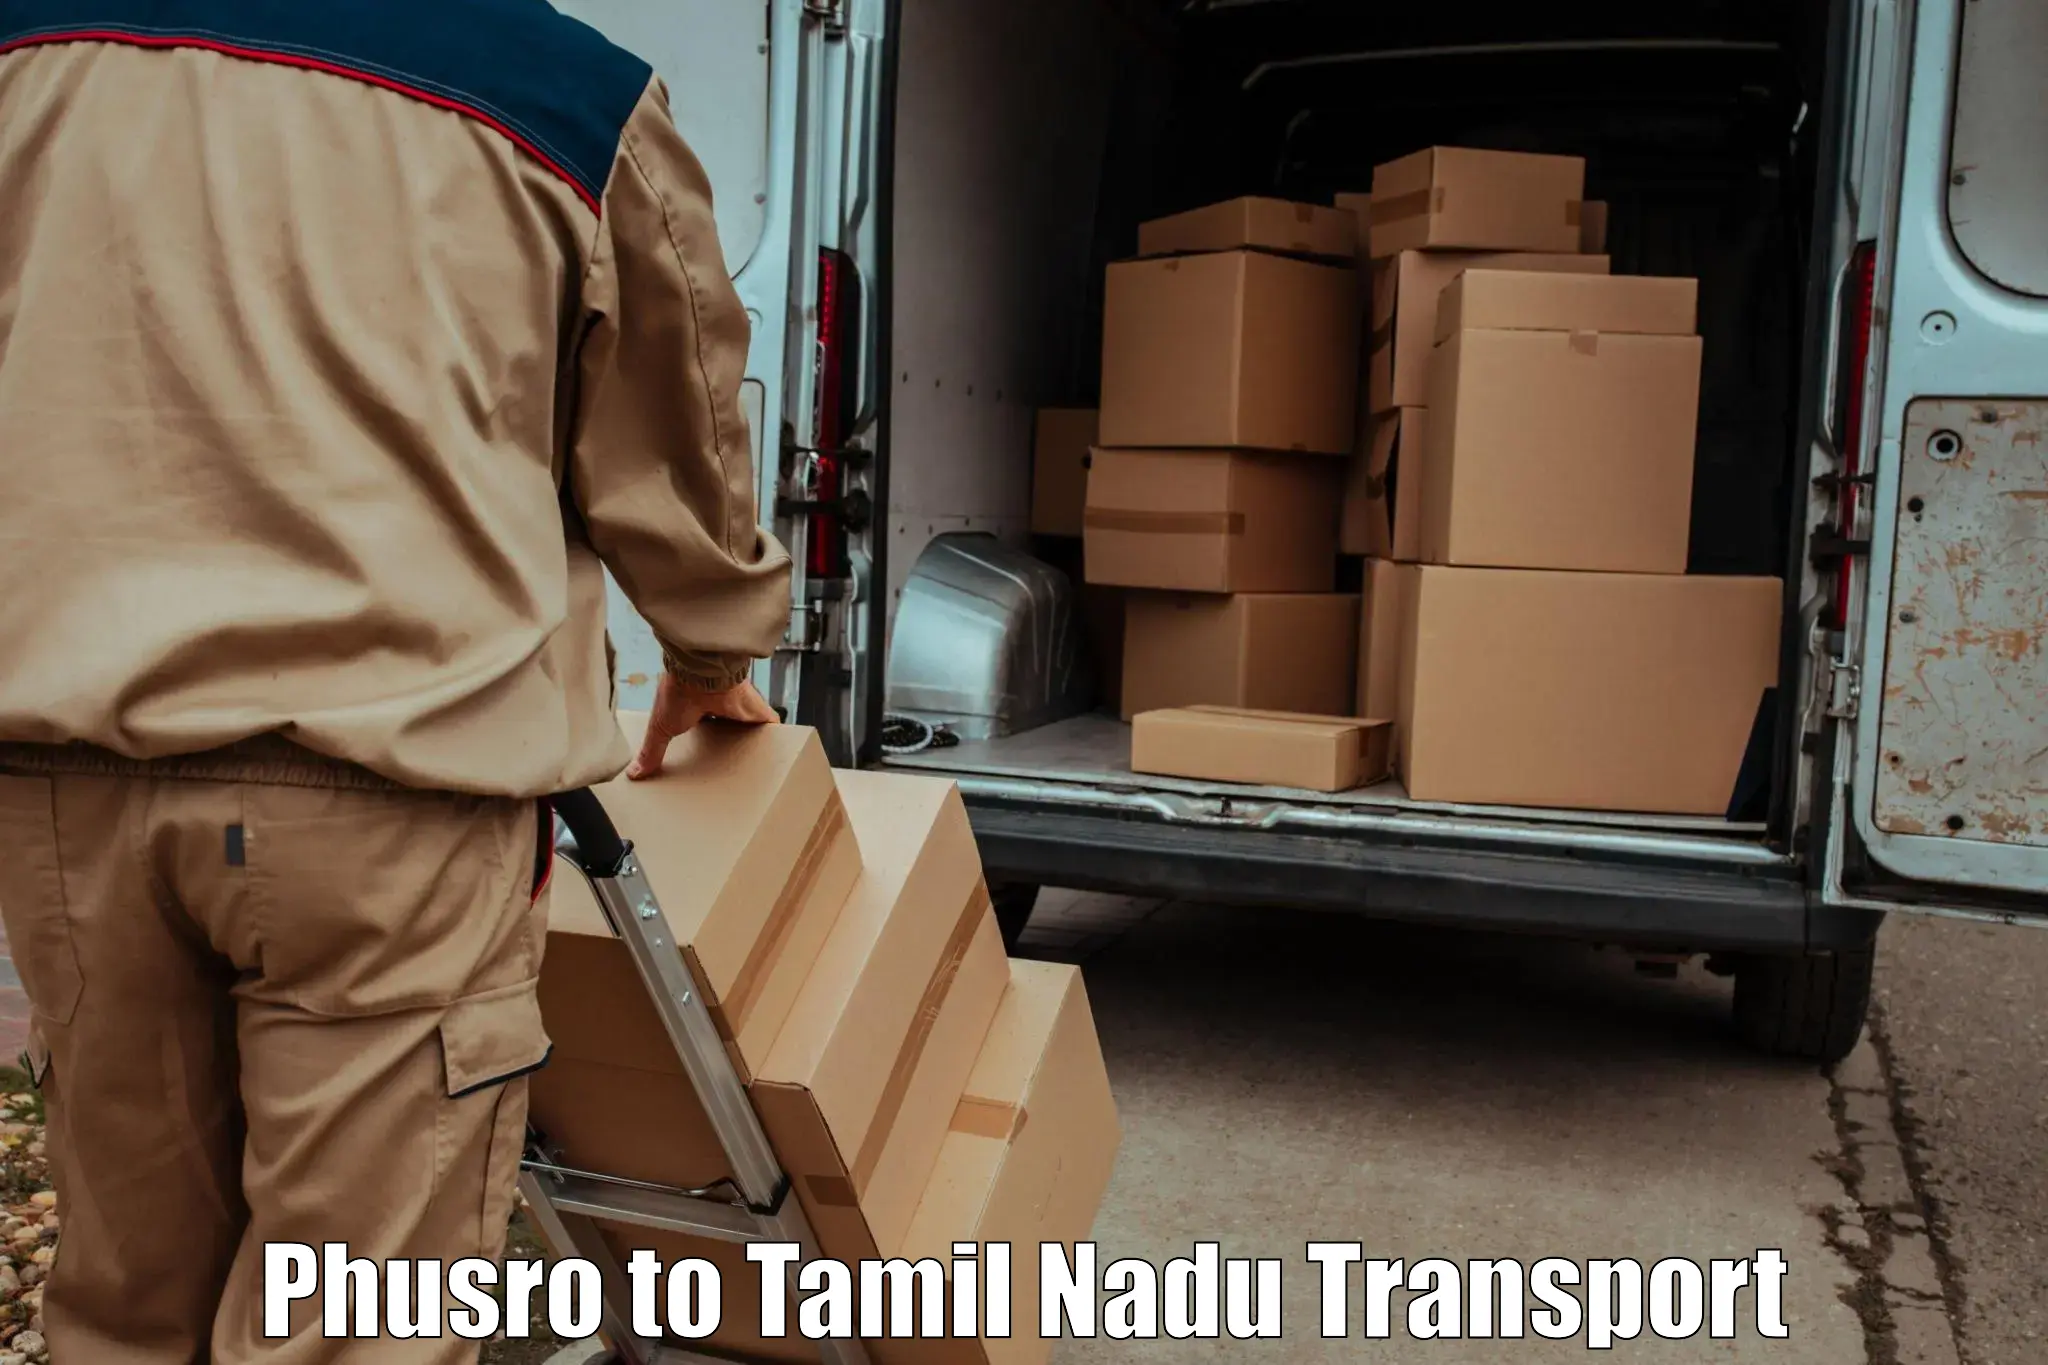 Transport in sharing Phusro to Tiruturaipundi